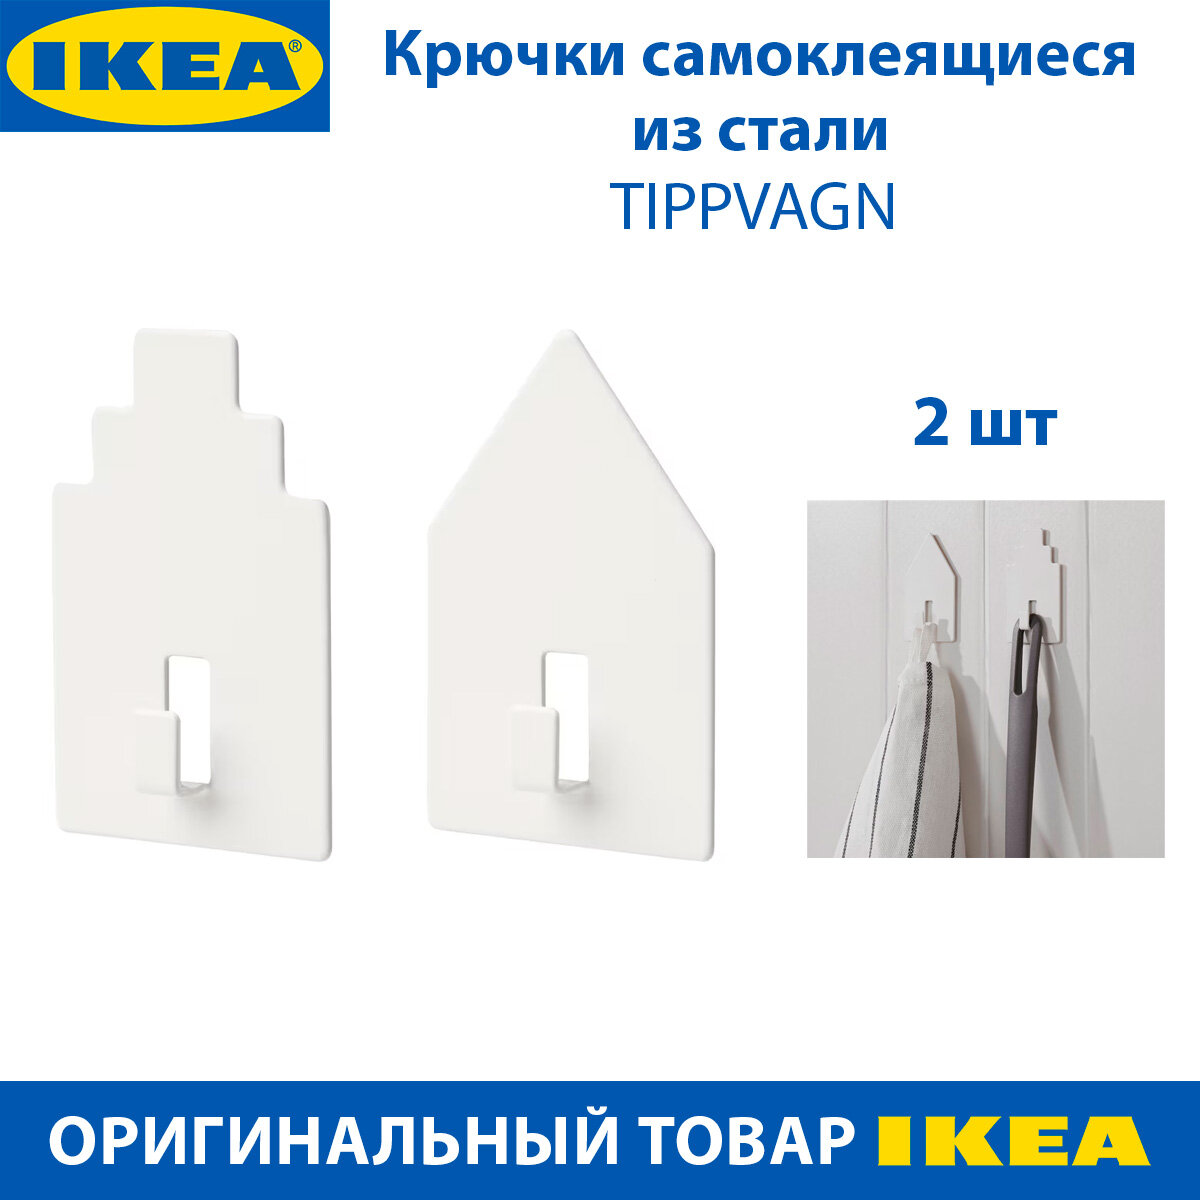 Крючок IKEA TIPPVAGN (типпвагн) самоклеящийся из стали цвет белый 2 шт в наборе